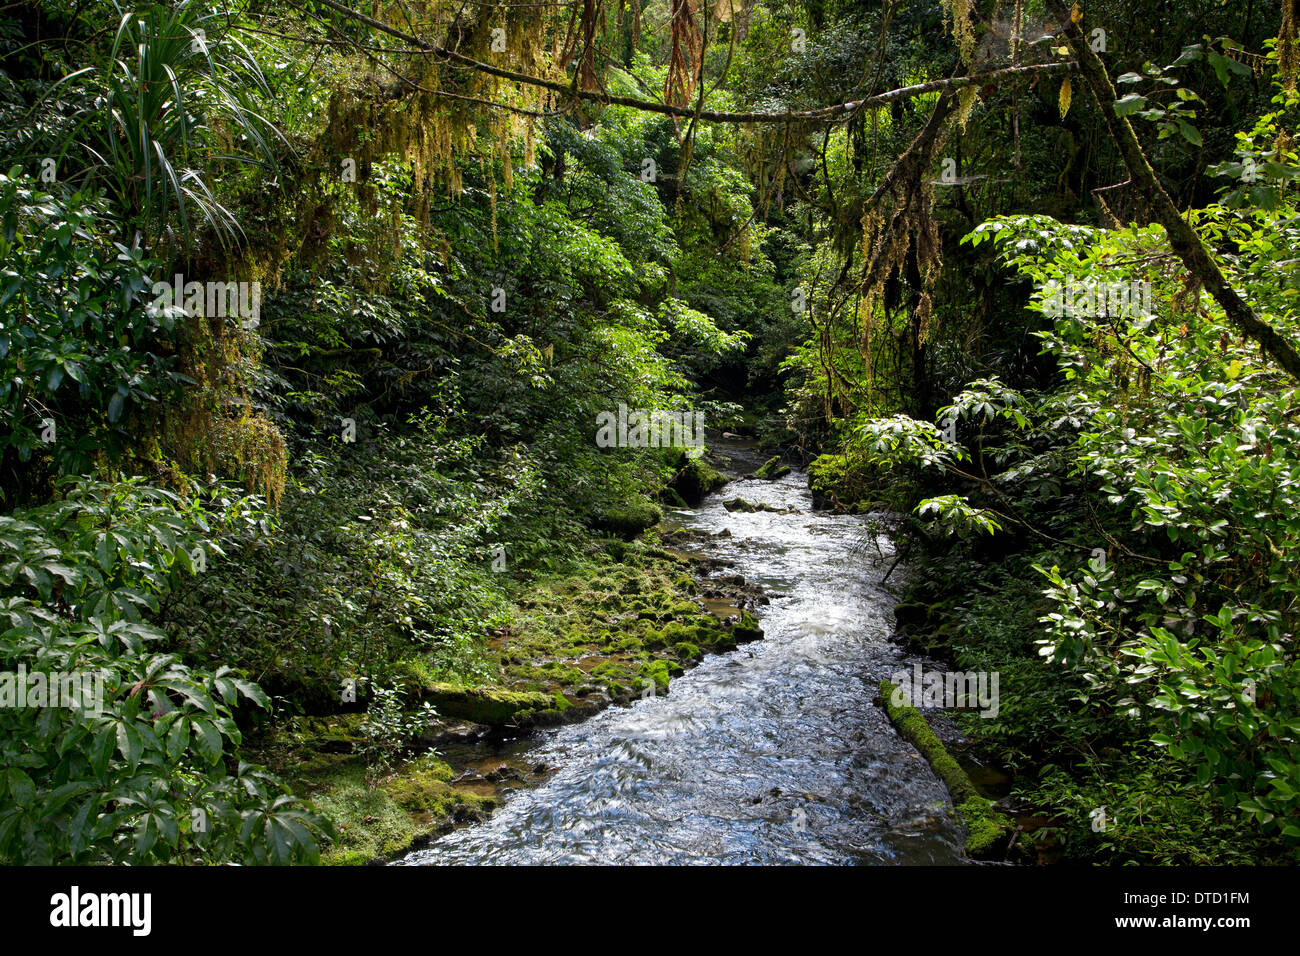 Ruakuri Scenic reserve, les forêts à pied, Waitomo, île du Nord, Nouvelle-Zélande Banque D'Images